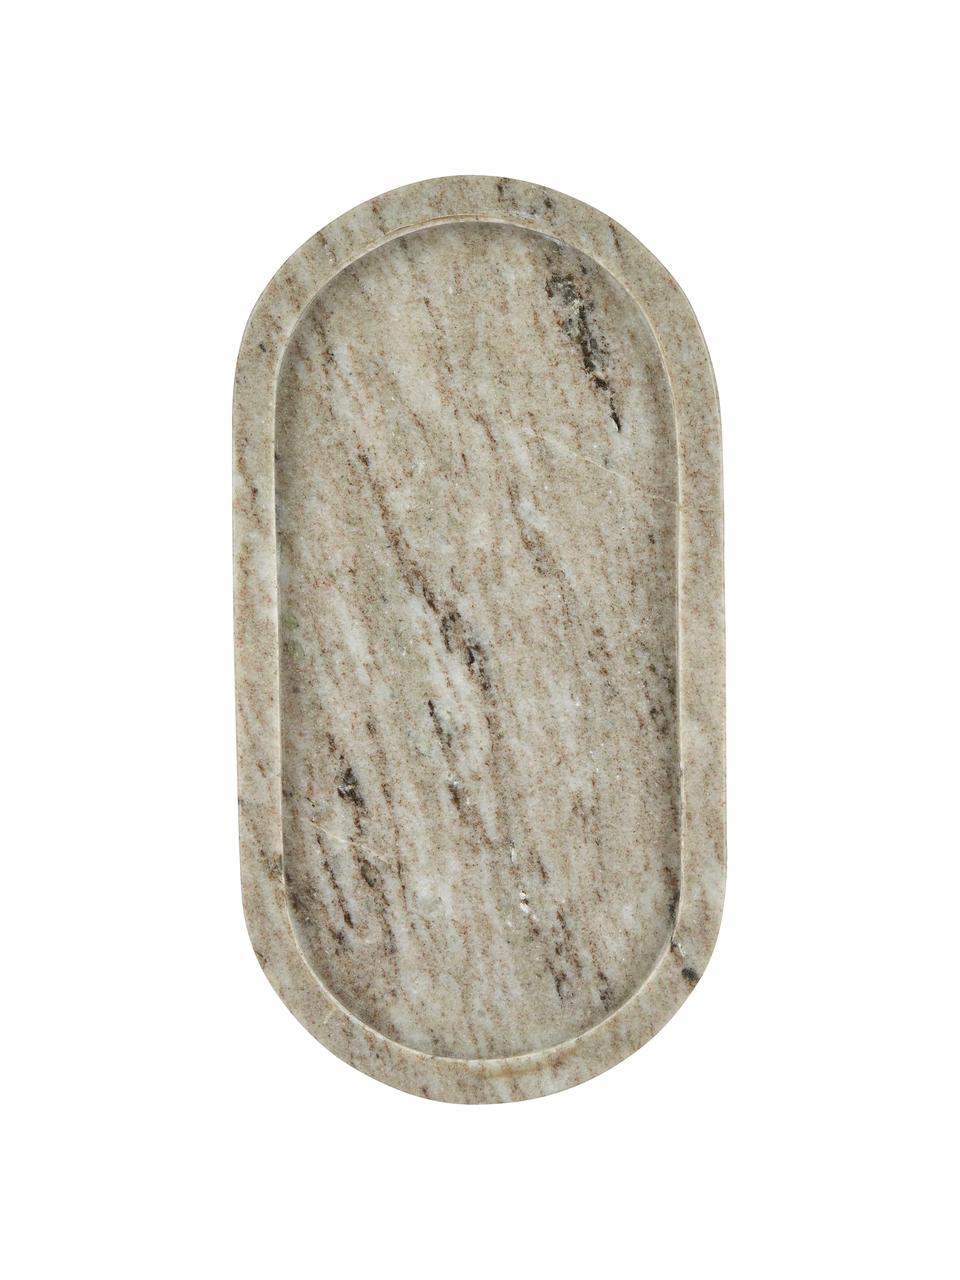 Deko-Tablett Oval aus Marmor in Beige, Marmor, Beige, B 28 x T 15 cm